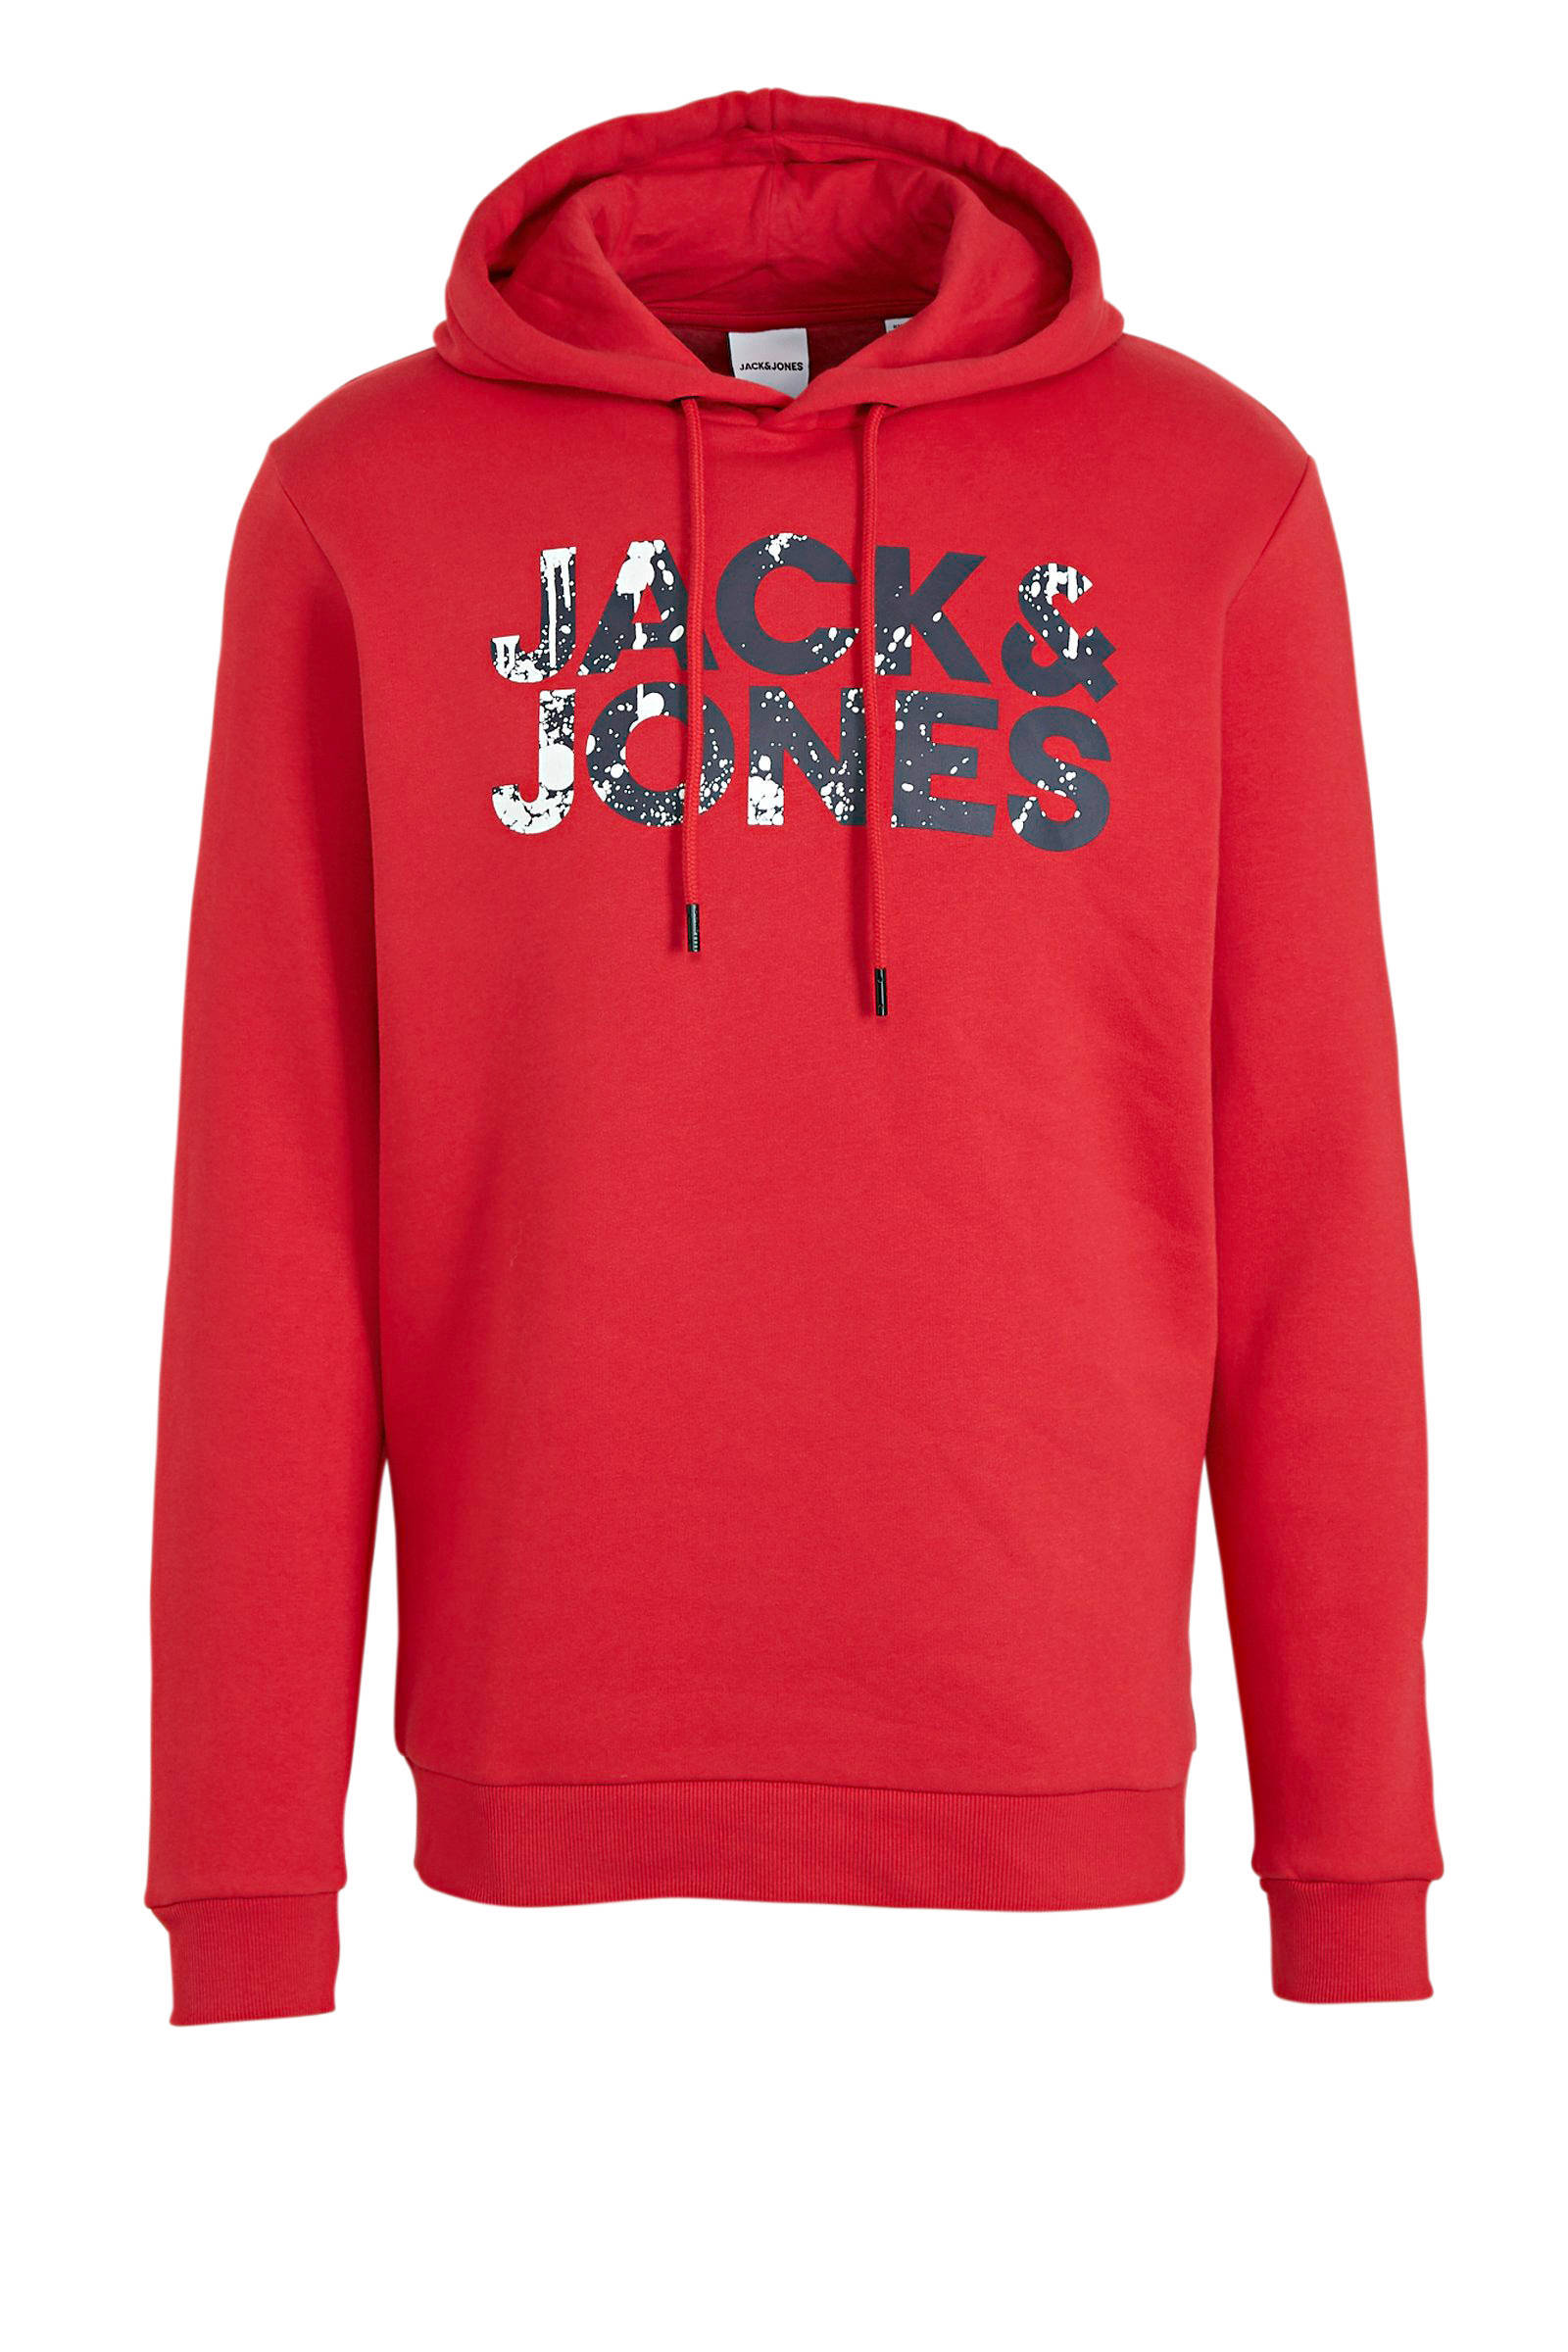 JACK & JONES ORIGINALS hoodie met logo rood online kopen